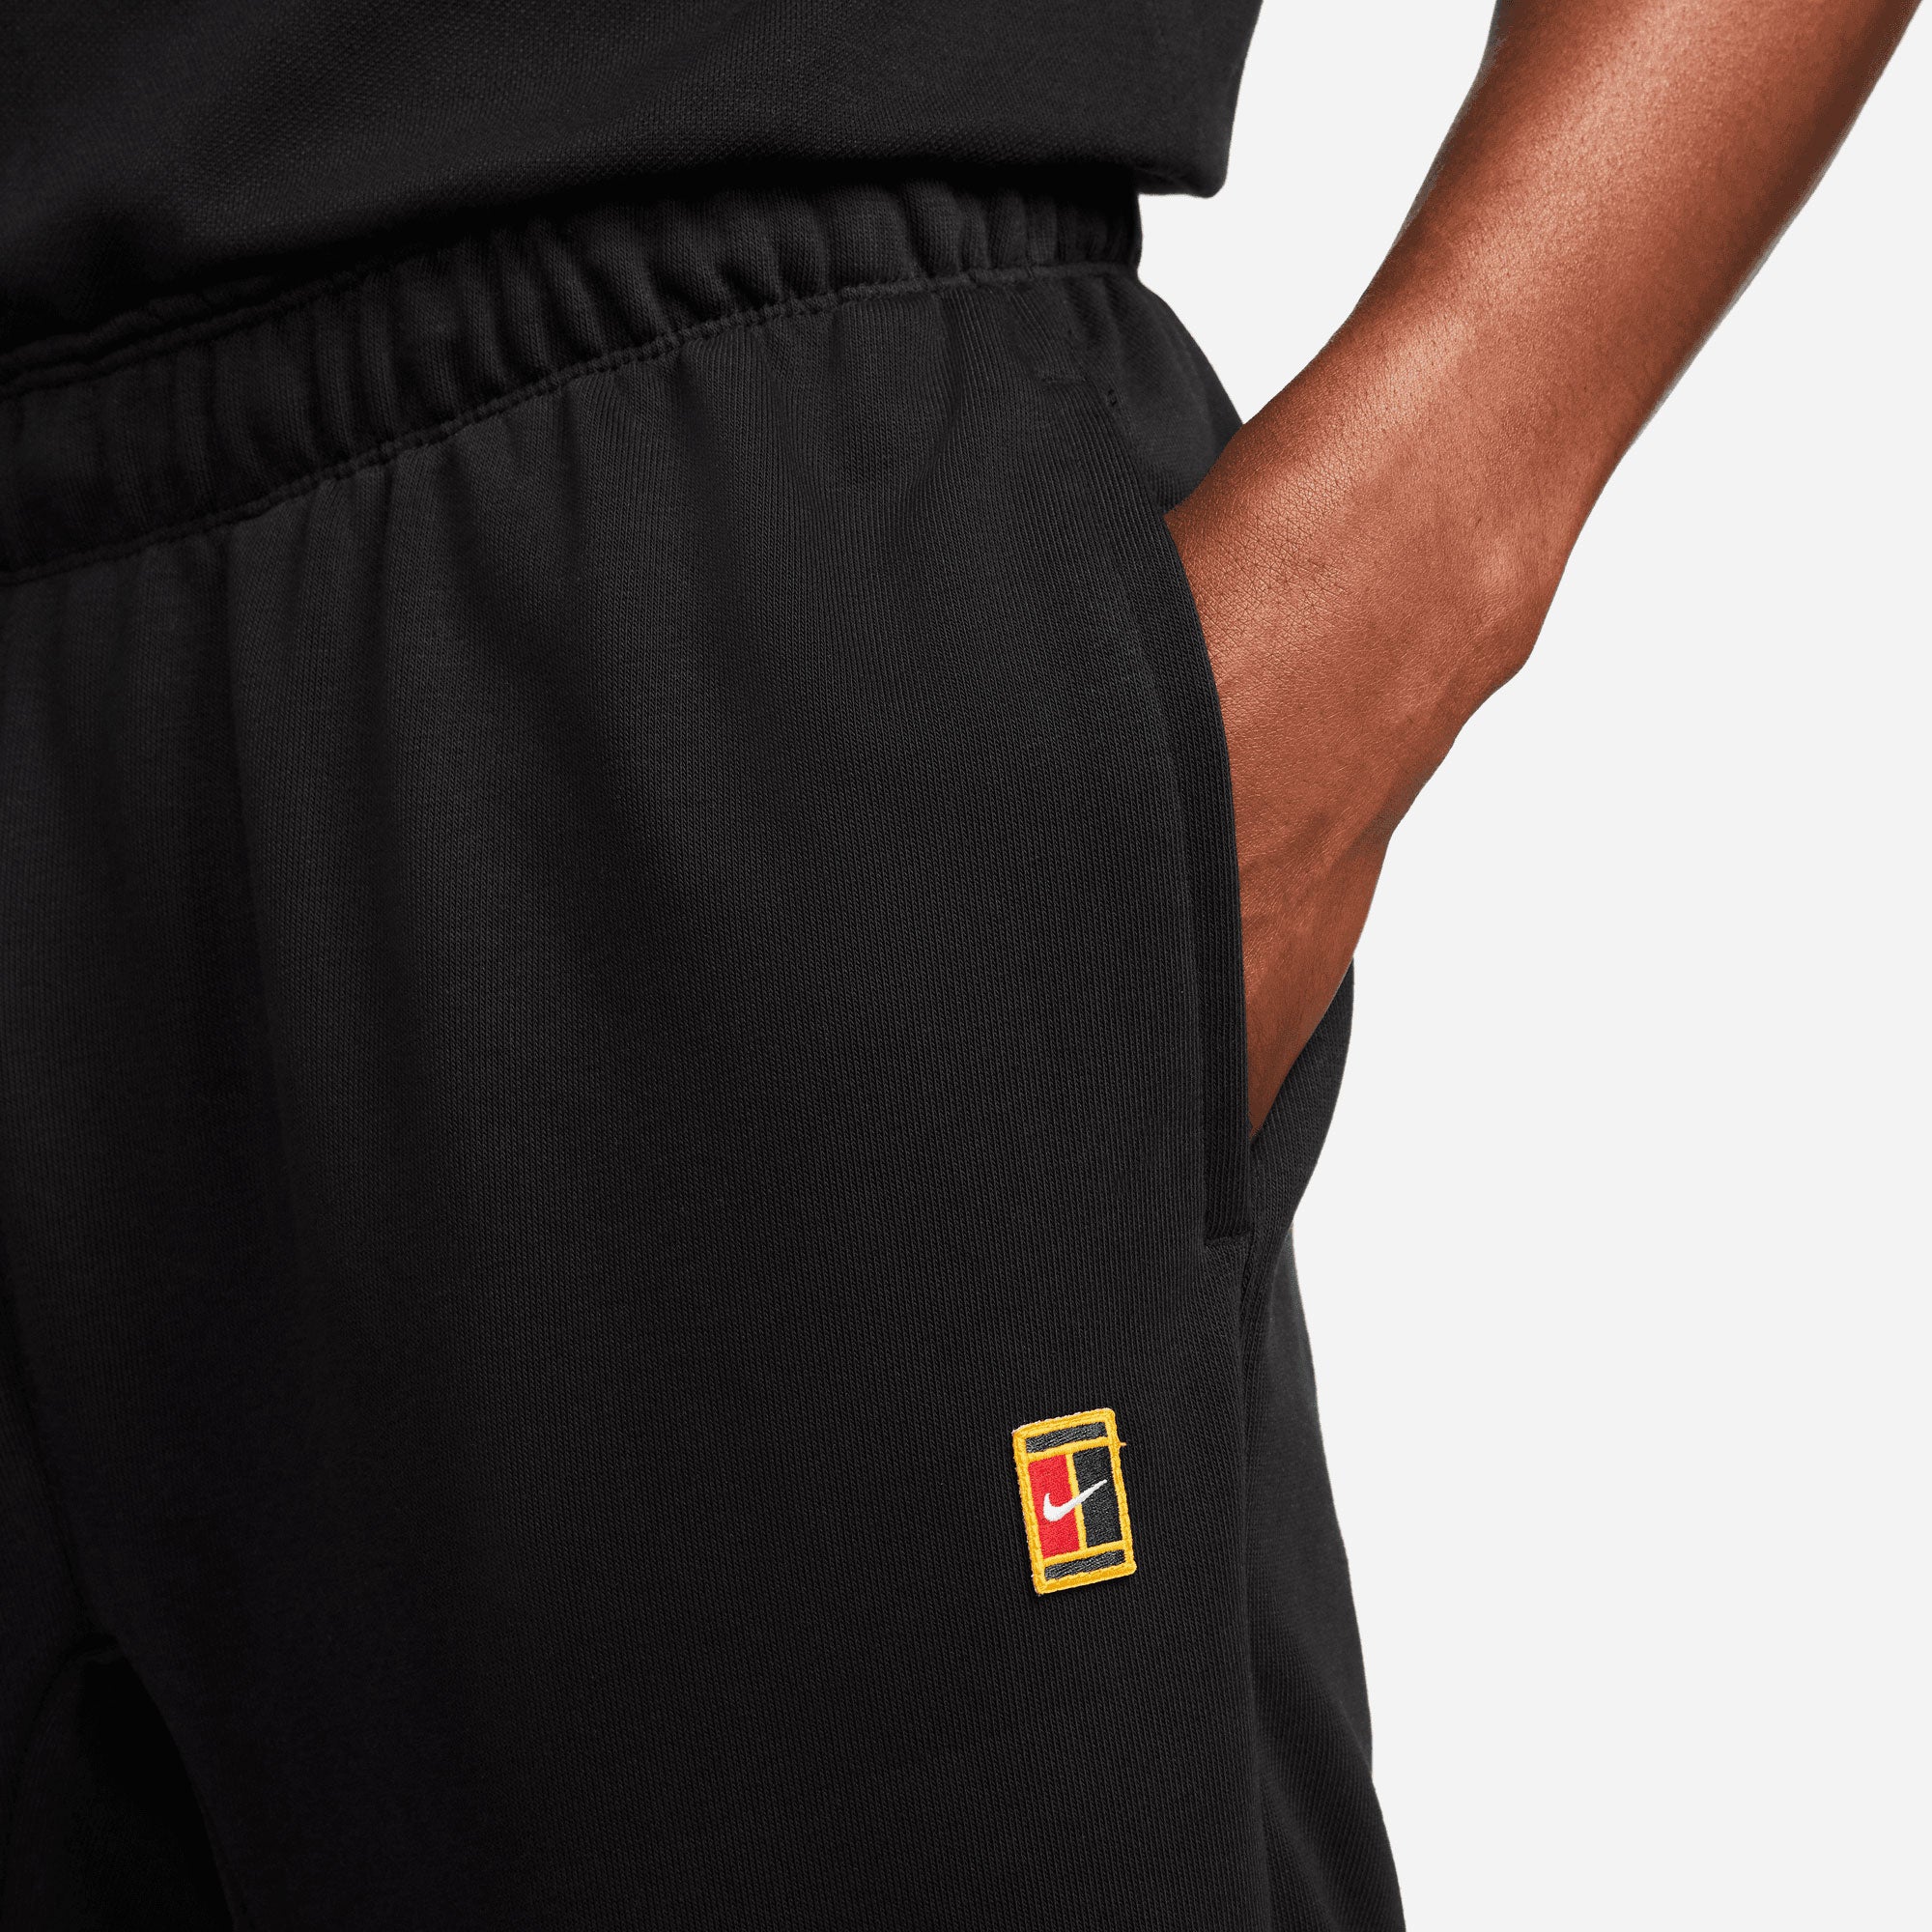 NikeCourt Heritage Men's Tennis Pants